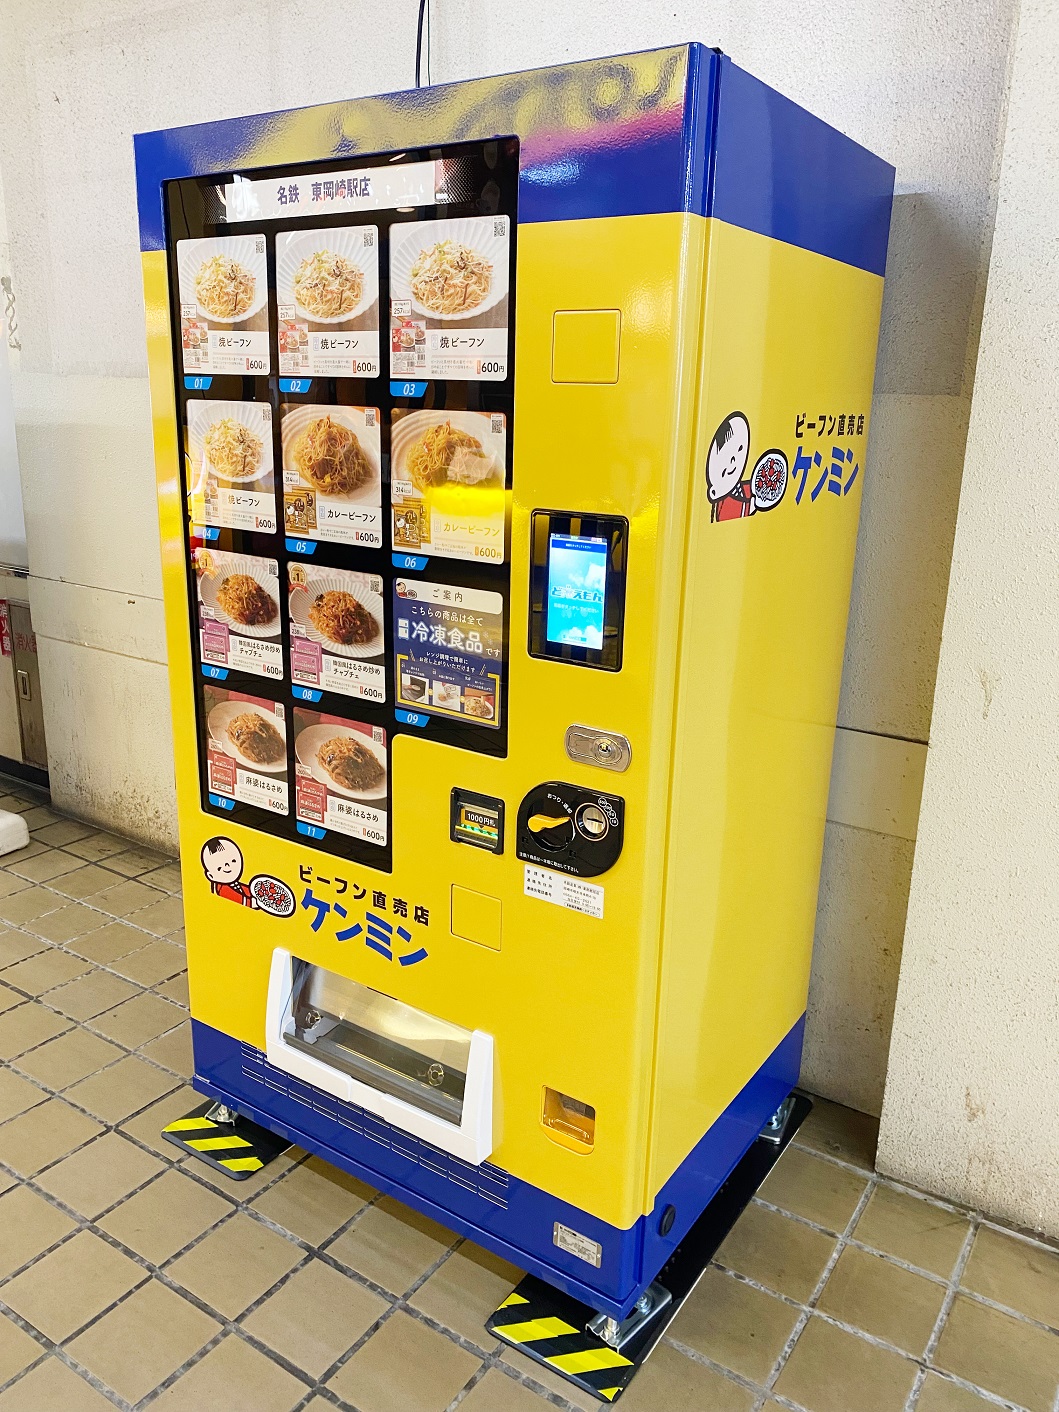 ケンミン食品冷凍ビーフン自販機を愛知県 名鉄東岡崎駅構内にて3月販売開始 兵庫を飛び出し初めて社外に設置 ケンミン食品株式会社のプレスリリース